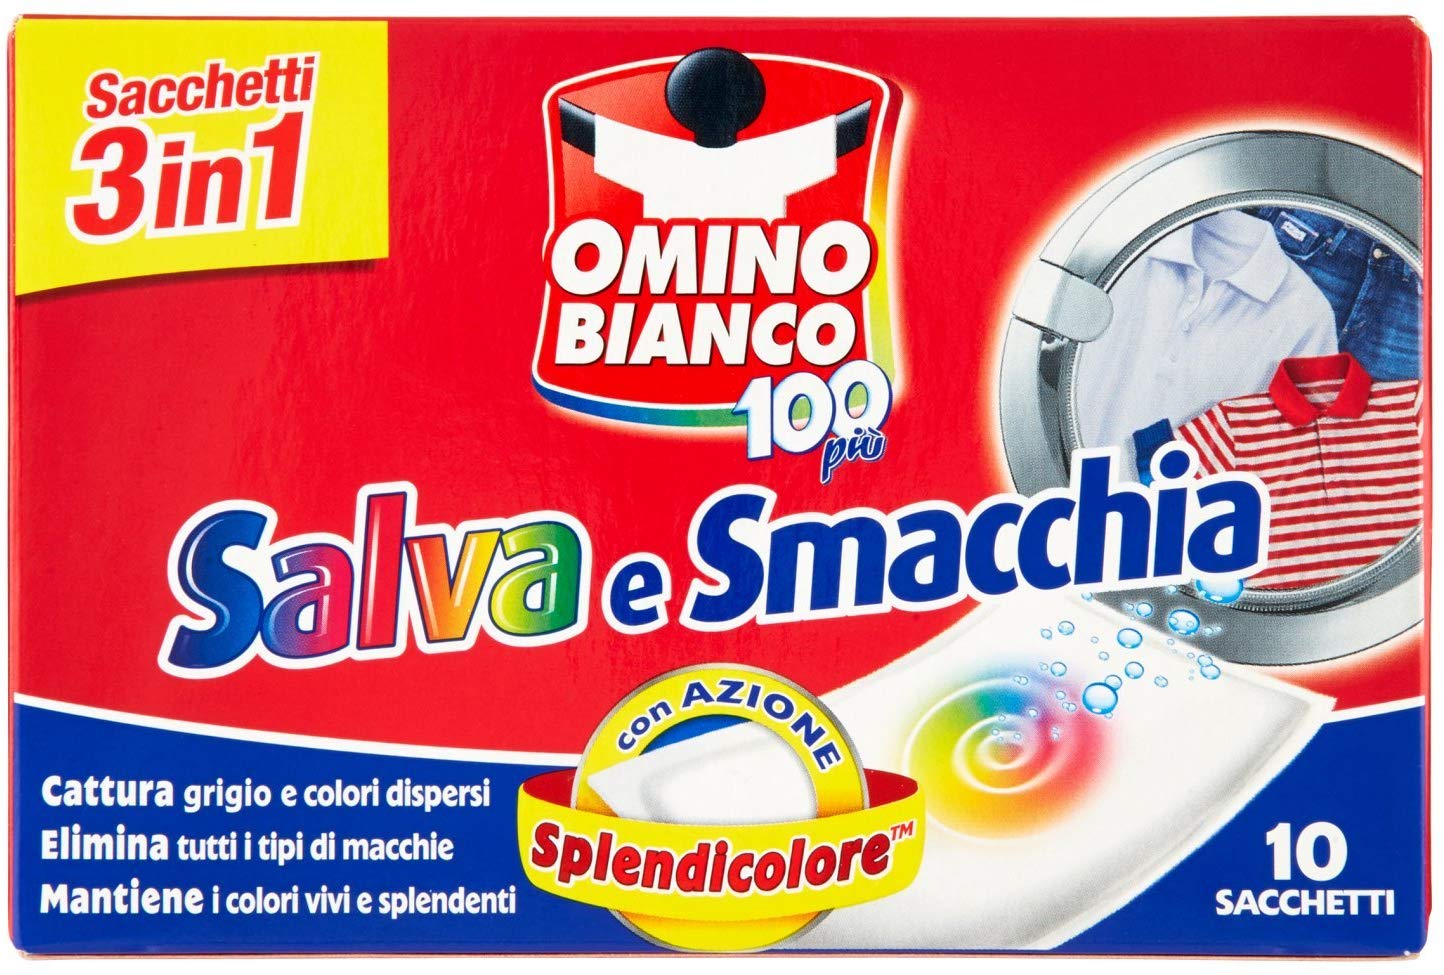 Omino Bianco - Salva e Smacchia, Sacchetti 3 in 1